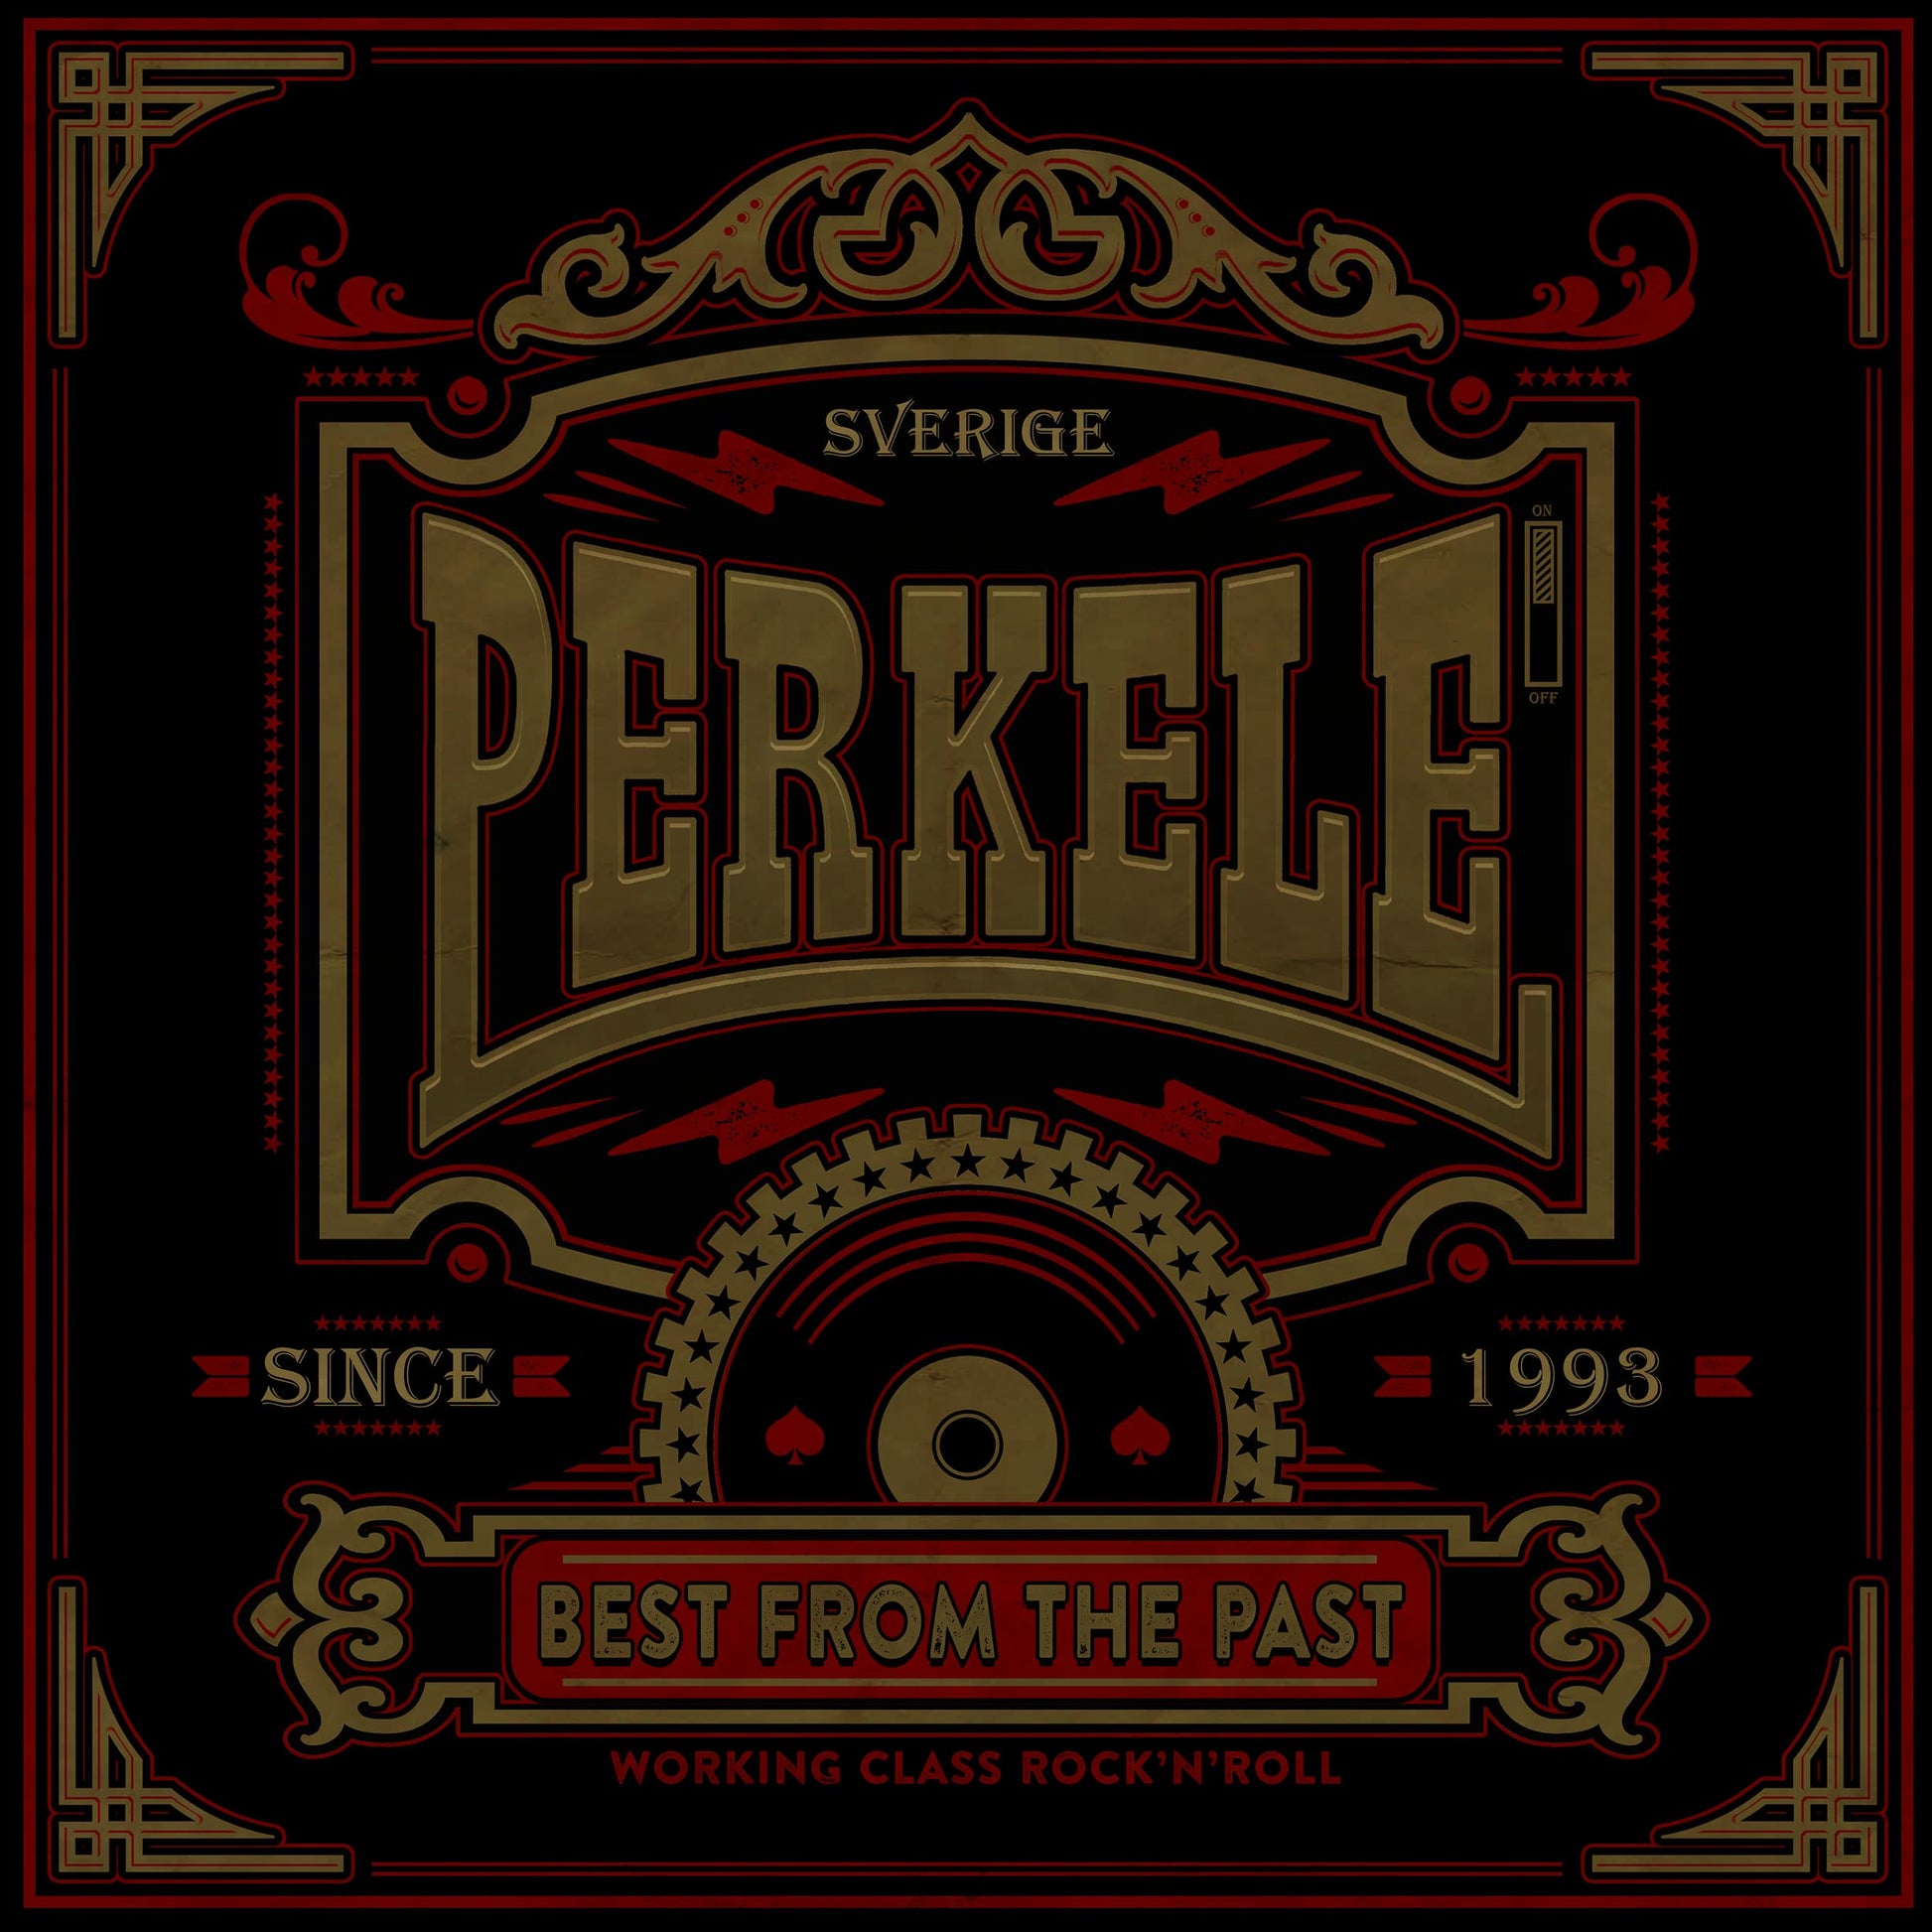 Perkele "Best from the past" CD (Jewell Case) - Premium  von Spirit of the Streets für nur €13.90! Shop now at Spirit of the Streets Mailorder